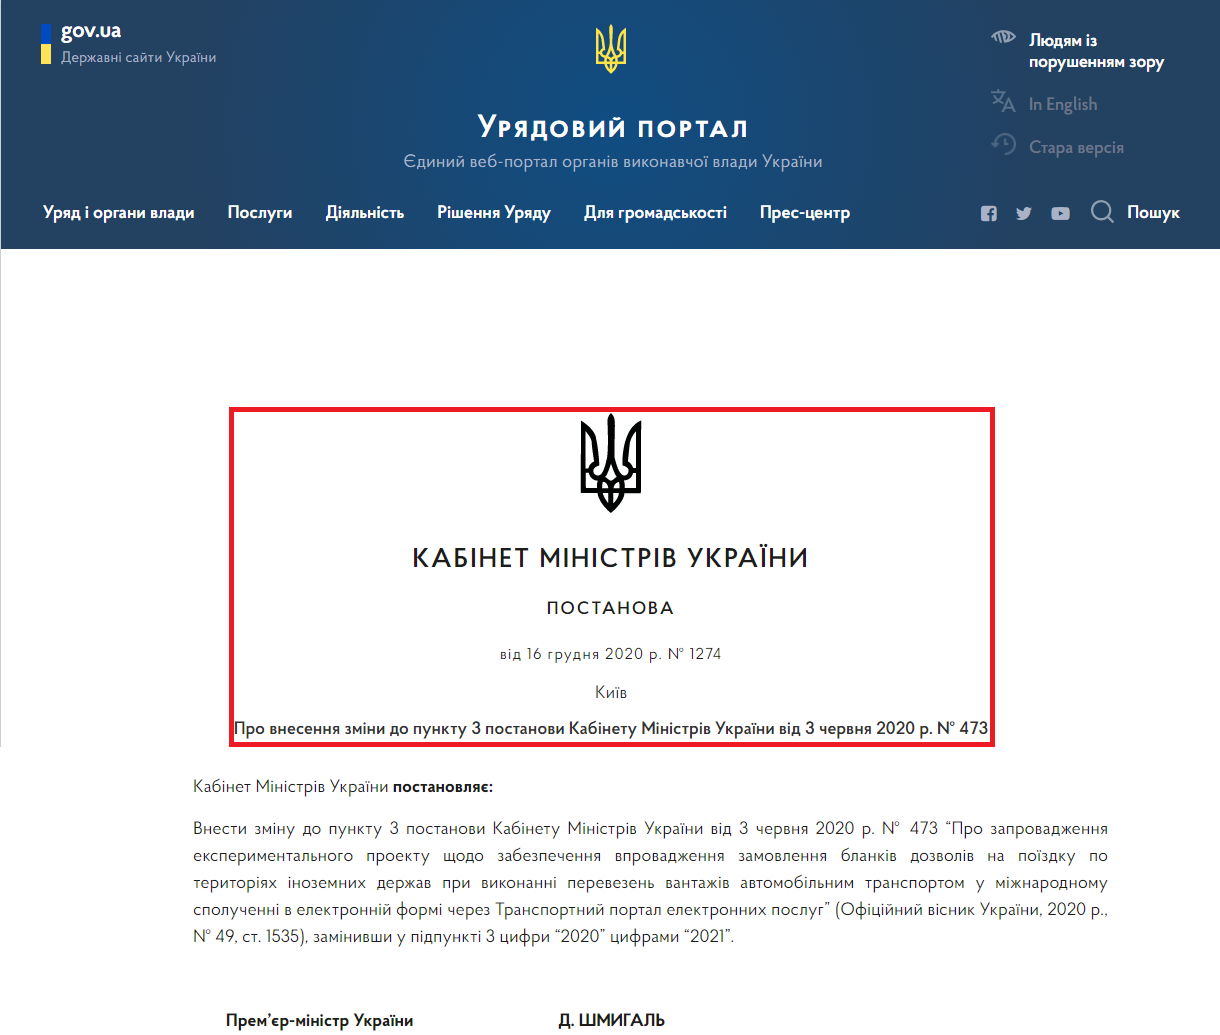 https://www.kmu.gov.ua/npas/pro-vnesennya-zmini-do-punktu-3-postanovi-kabinetu-ministriv-ukrayini-vid-3-chervnya-2020-r-t161220